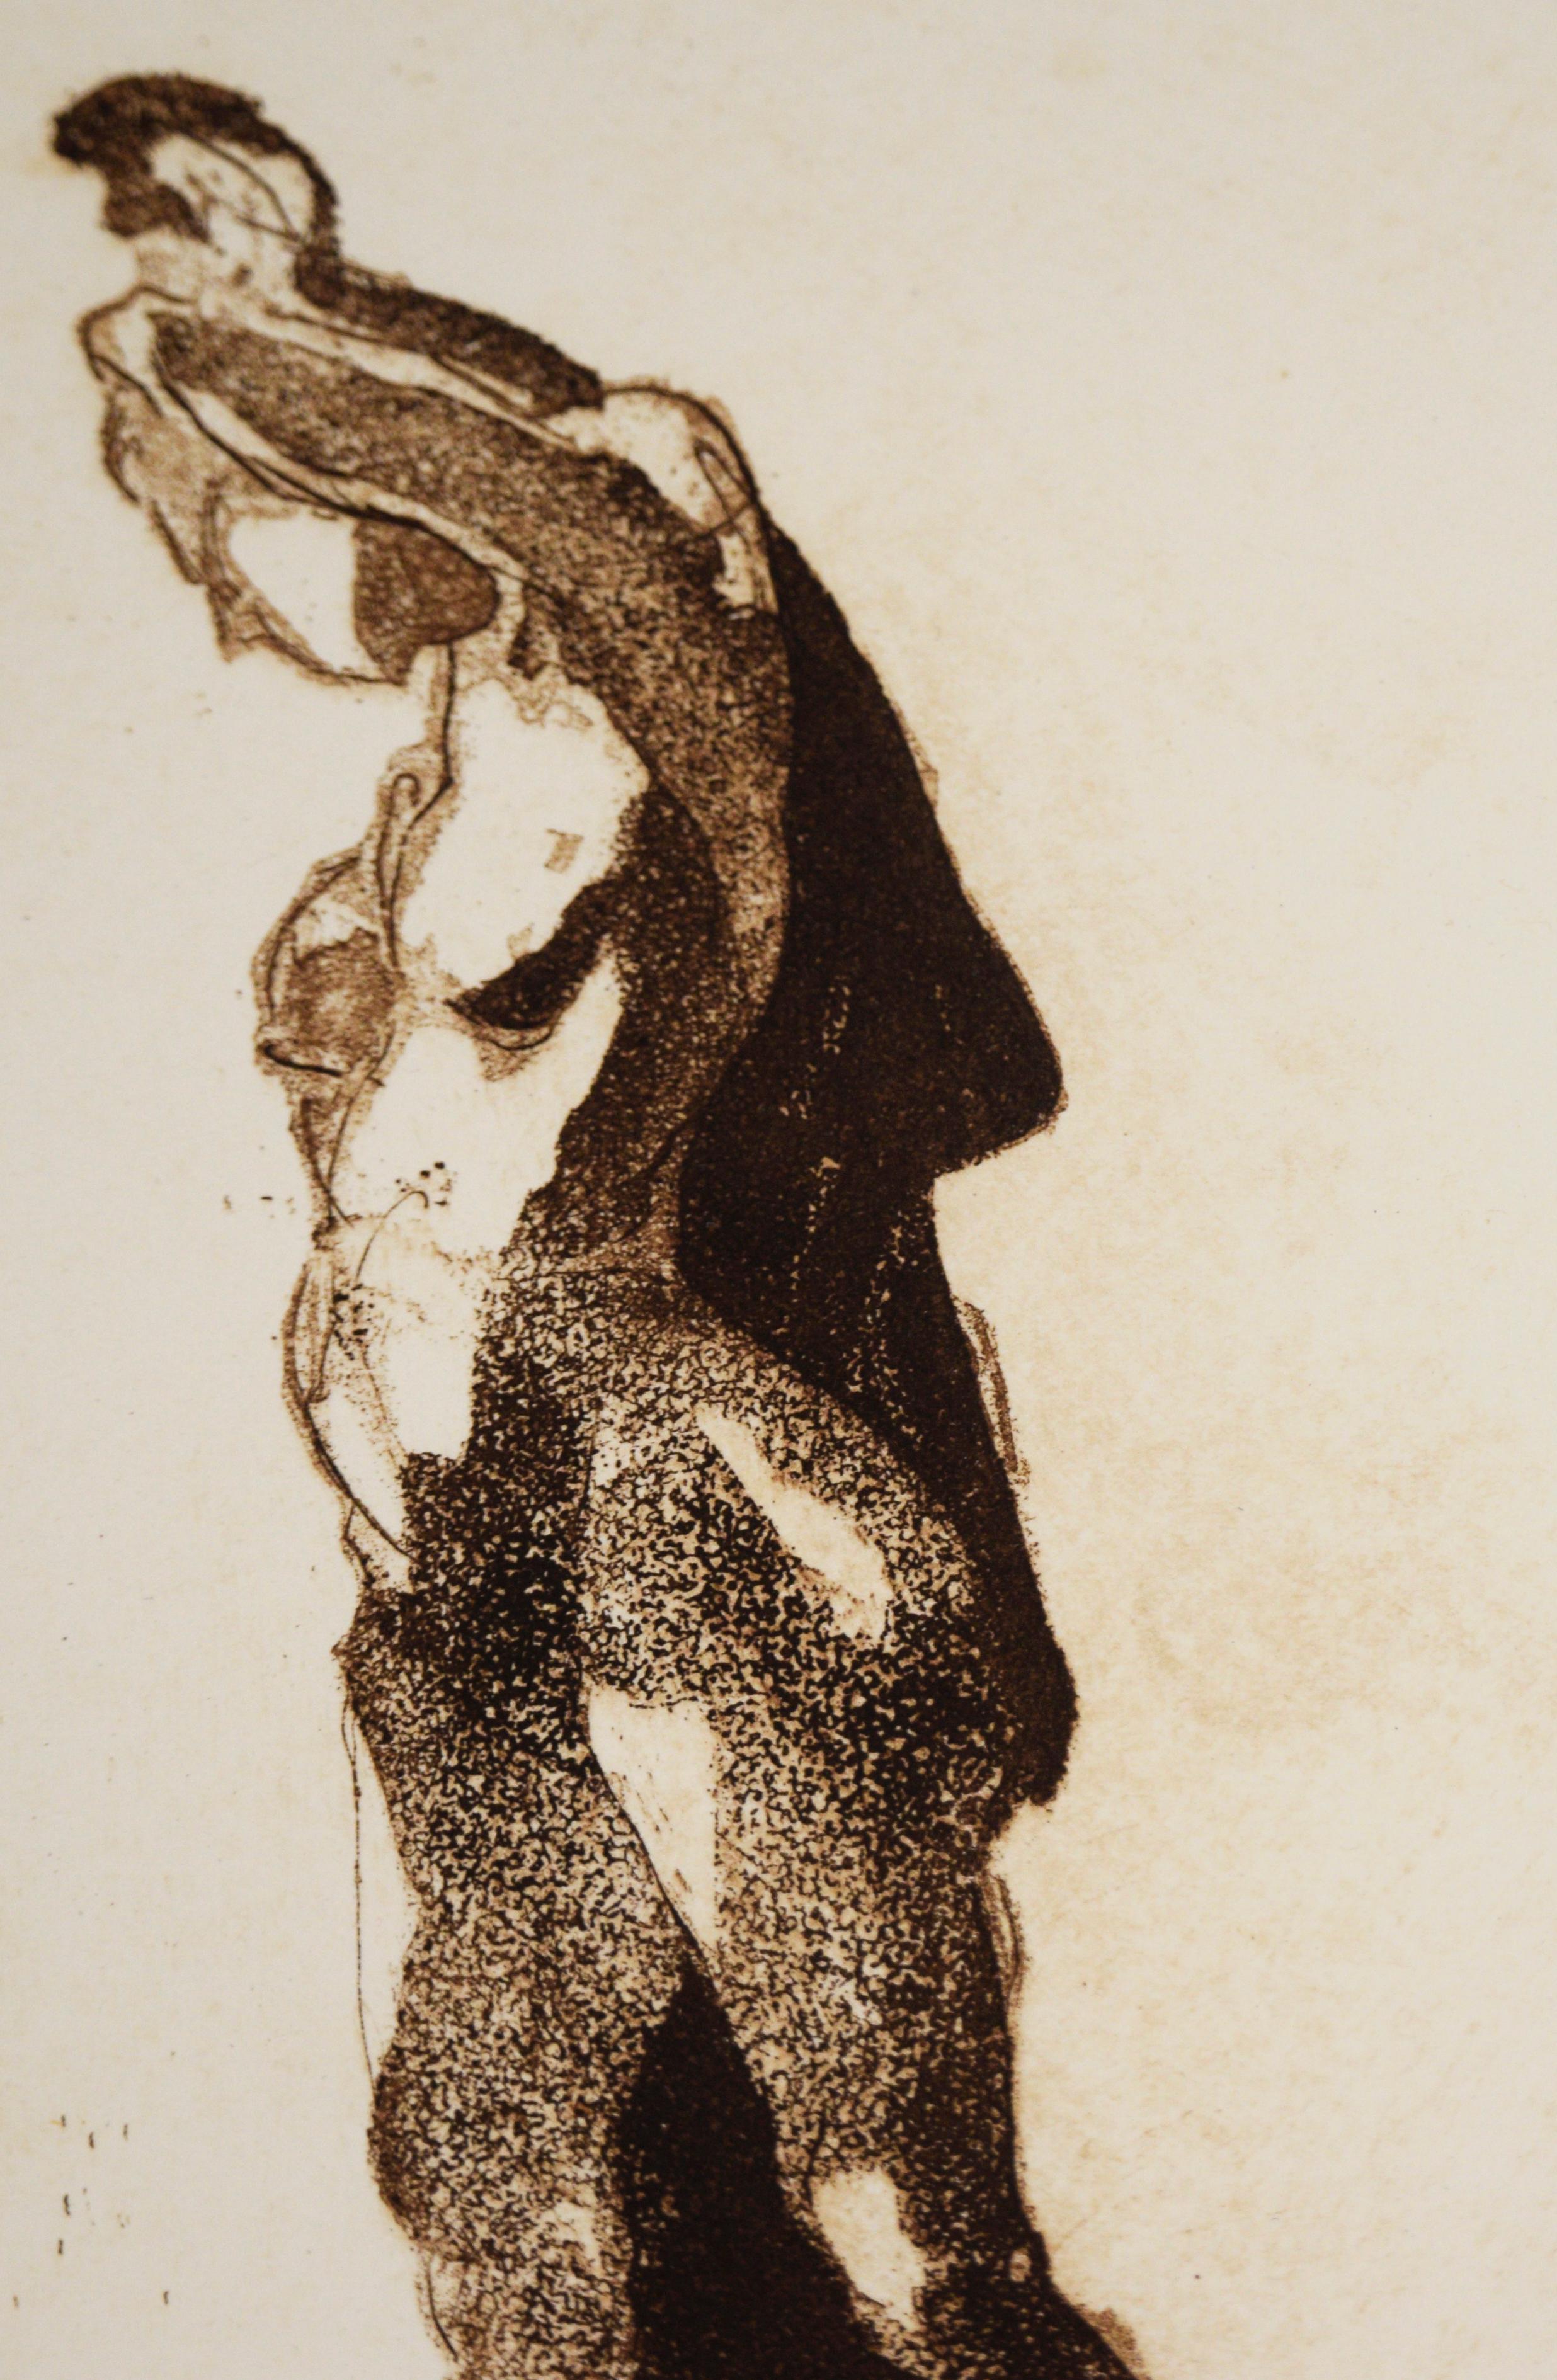 „Study 6“ - 1975 Figurative Lithographie auf Papier

Abstrakte figurative Lithografie von Jim Smyth (Amerikaner, geb. 1938). Die nackte Figur ist mit einer Hand über dem Kopf zu sehen, die ein Tuch hält, während sie nach unten blickt.

Unten